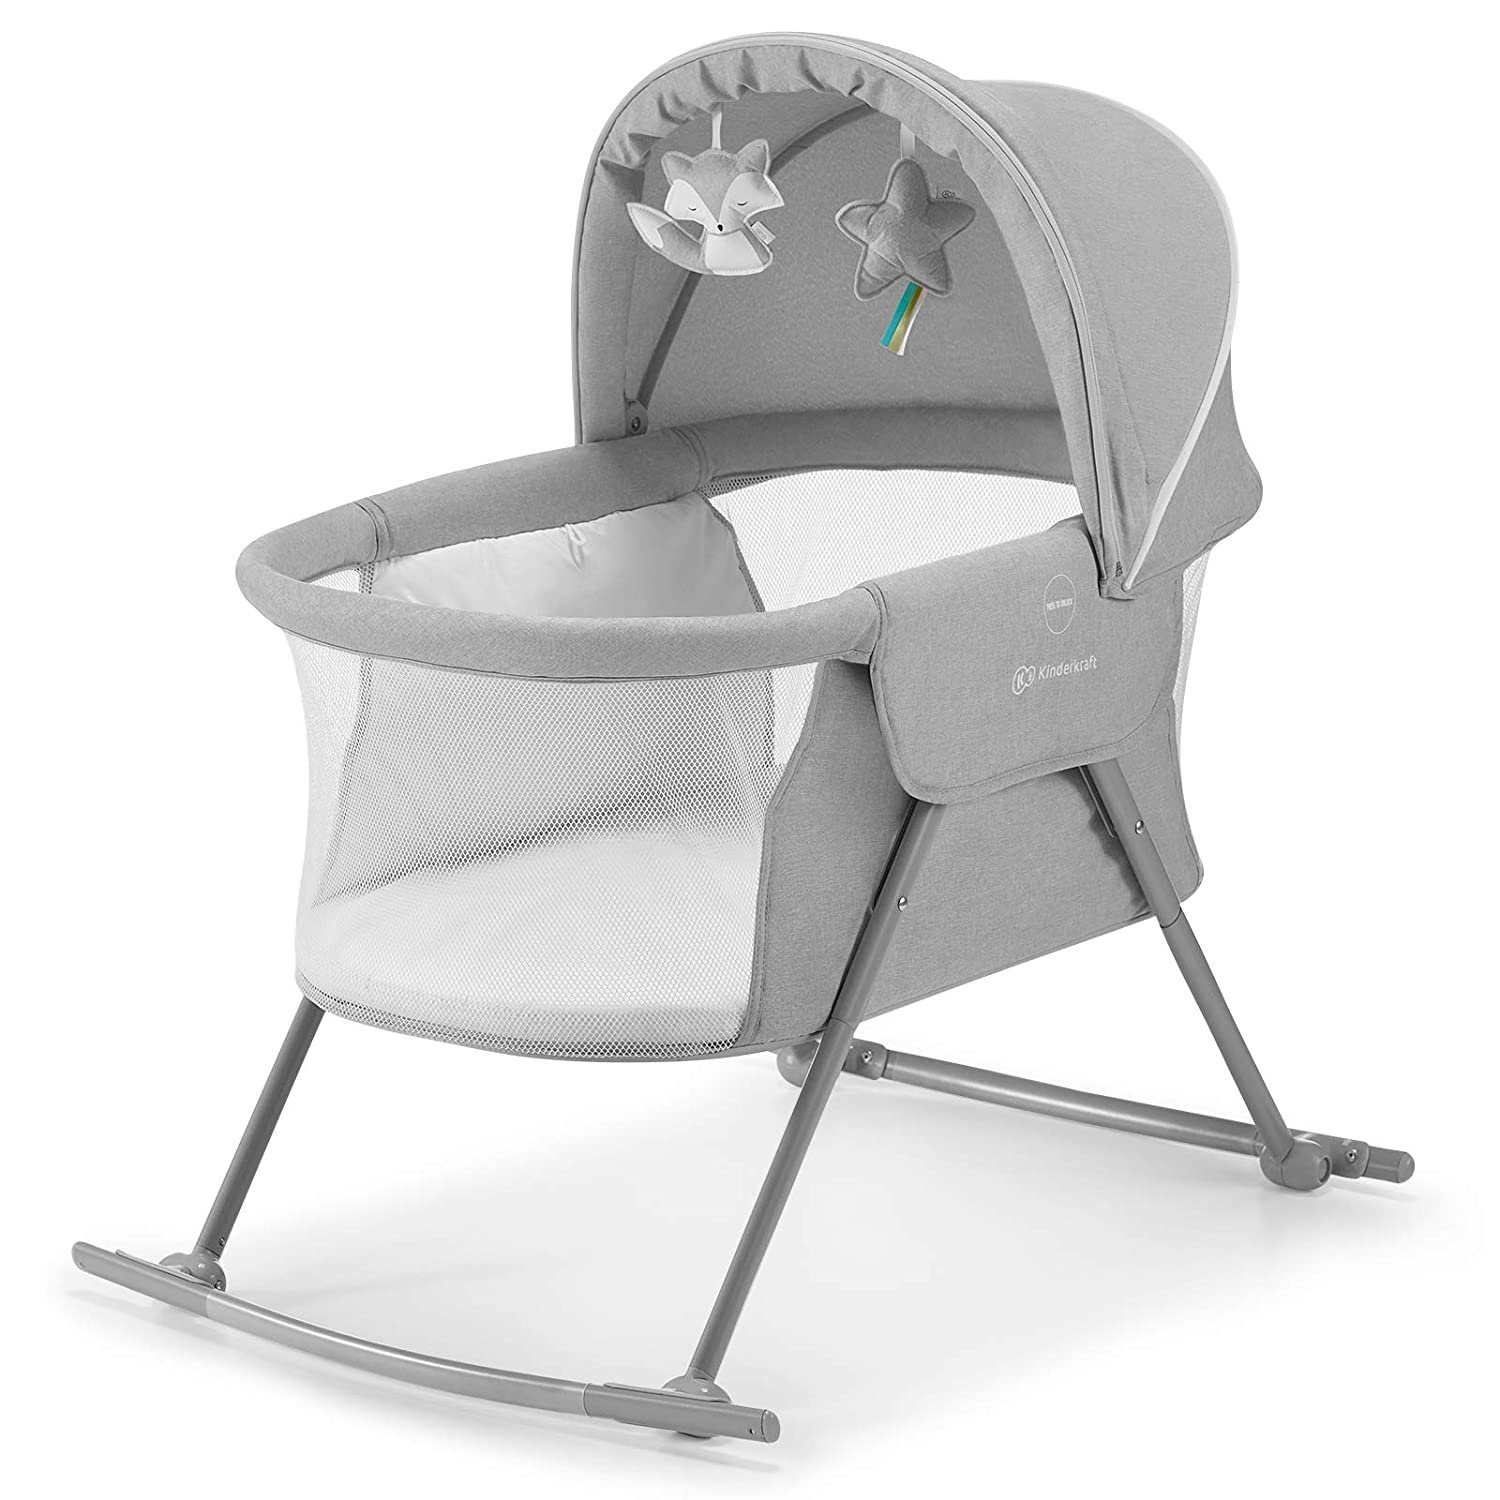 Babybett Stubenwagen Babywiege Beistellbett Kinderbett Reisebett für Kinder Baby 